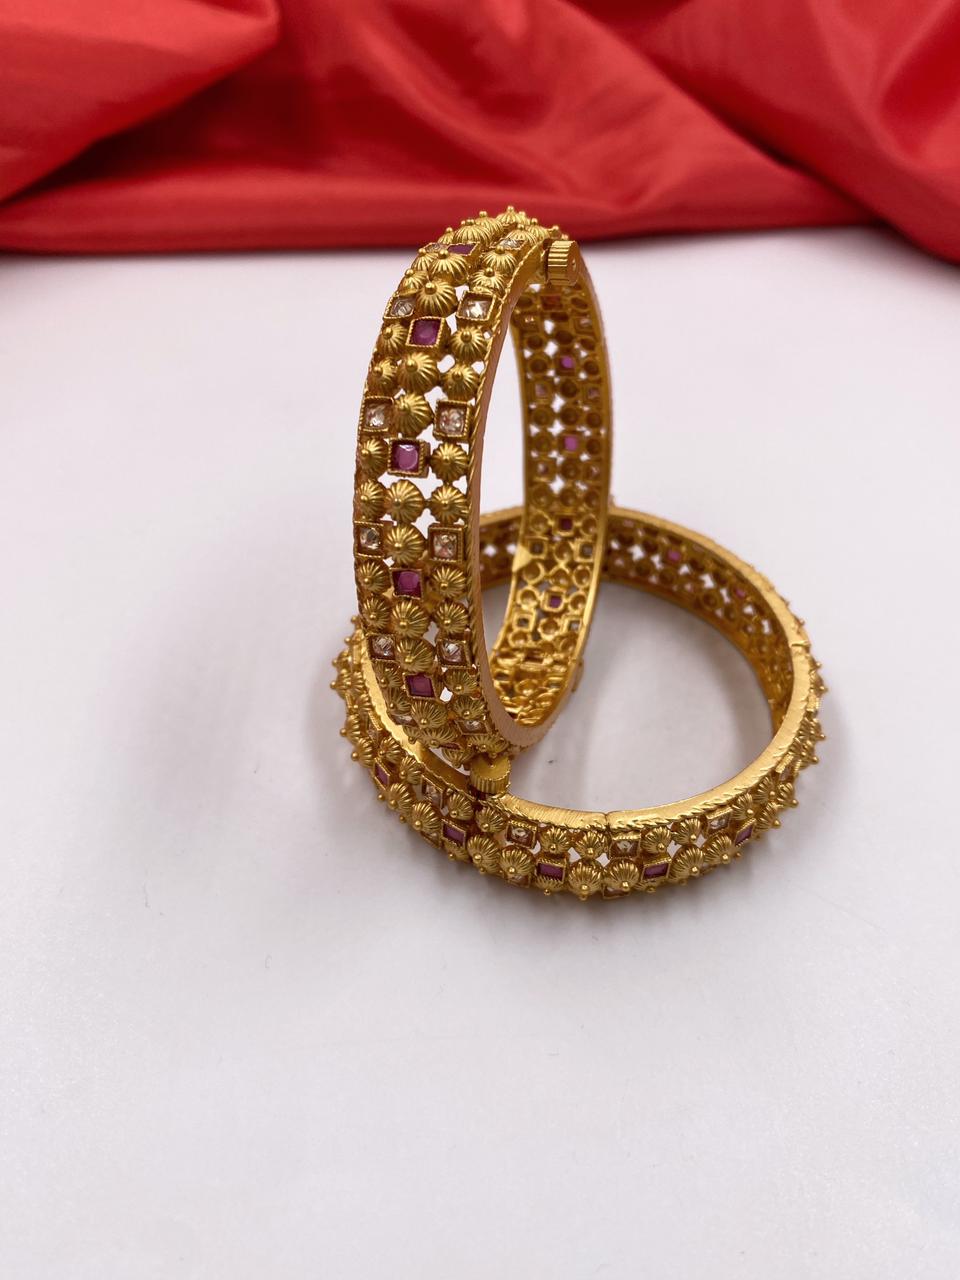 Designer Antique One Gram Gold Bangles For Ladies By Gehna Shop Antique Golden Bangles